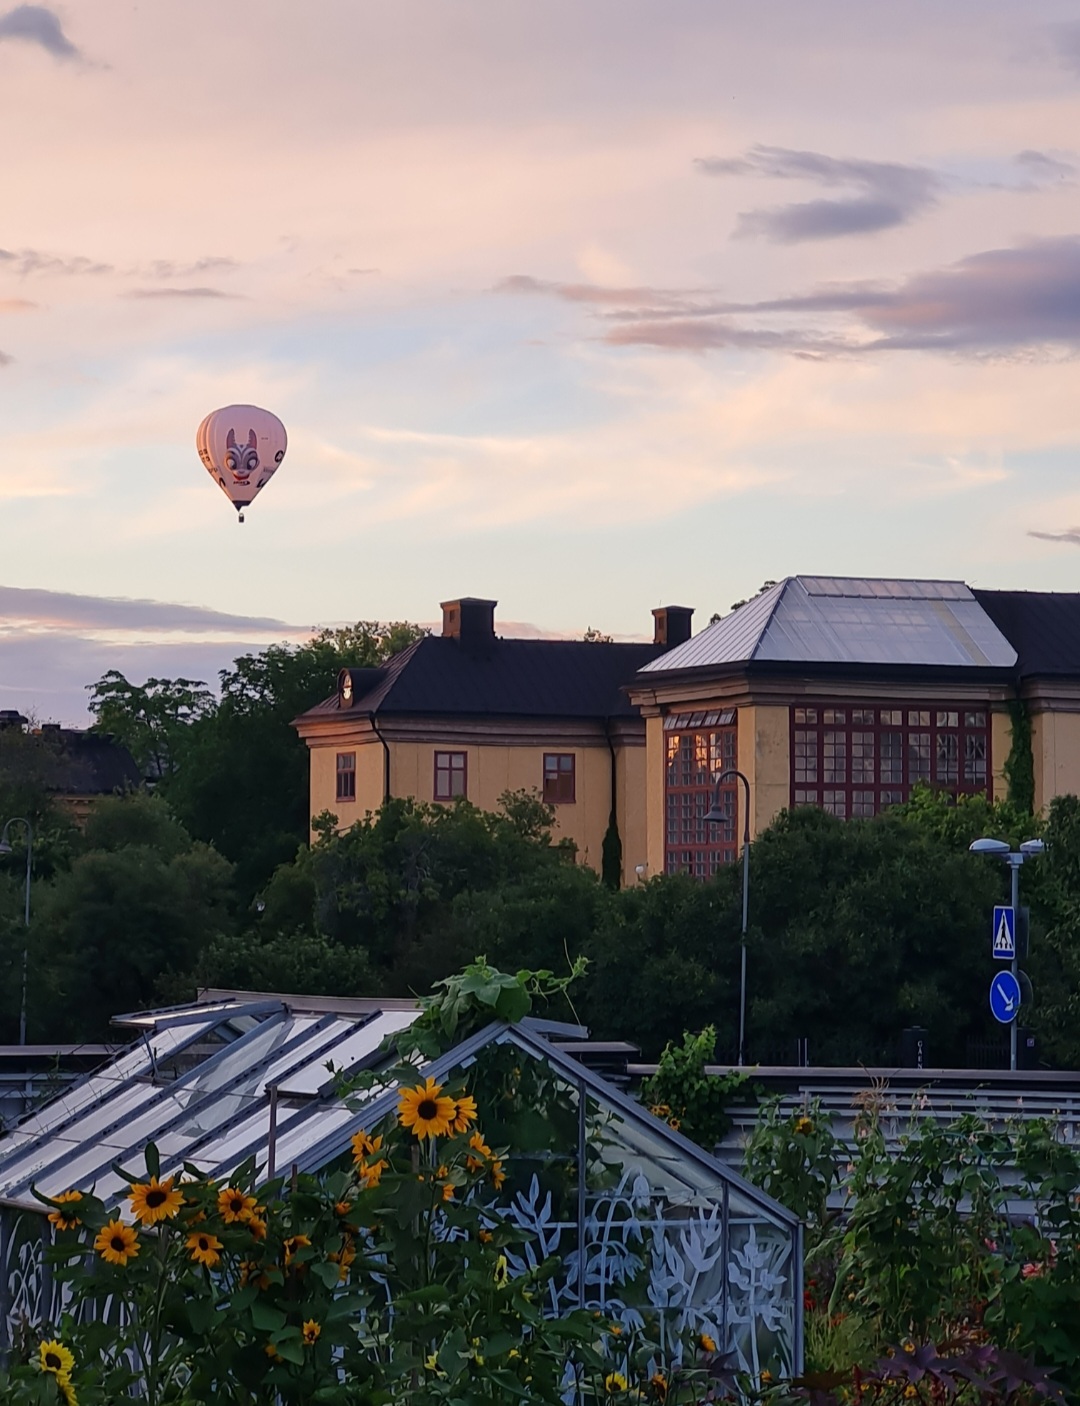 Flyg luftballong i Uppsala eller Stockholm vore en dröm!